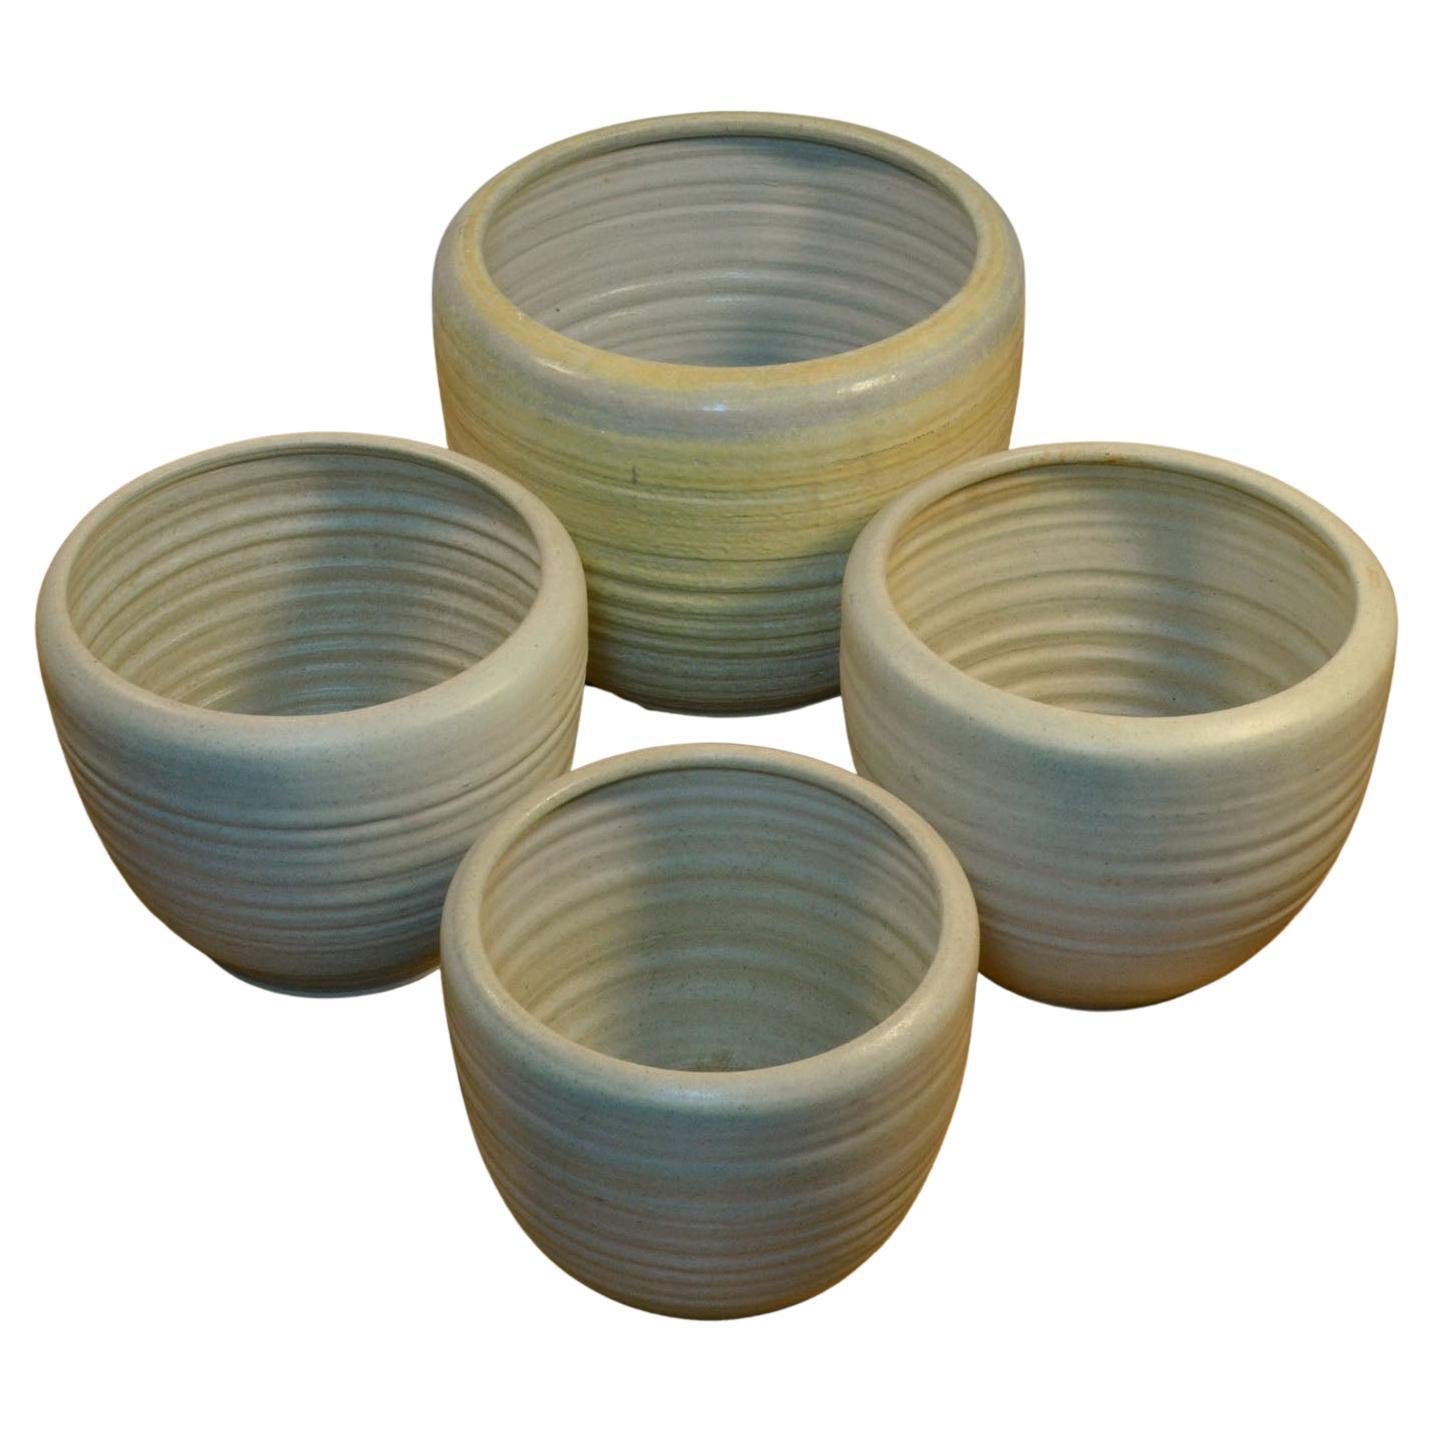 Große cremeweiße architektonische Mobach-Pflanzgefäße aus Keramik von Studio Pottery